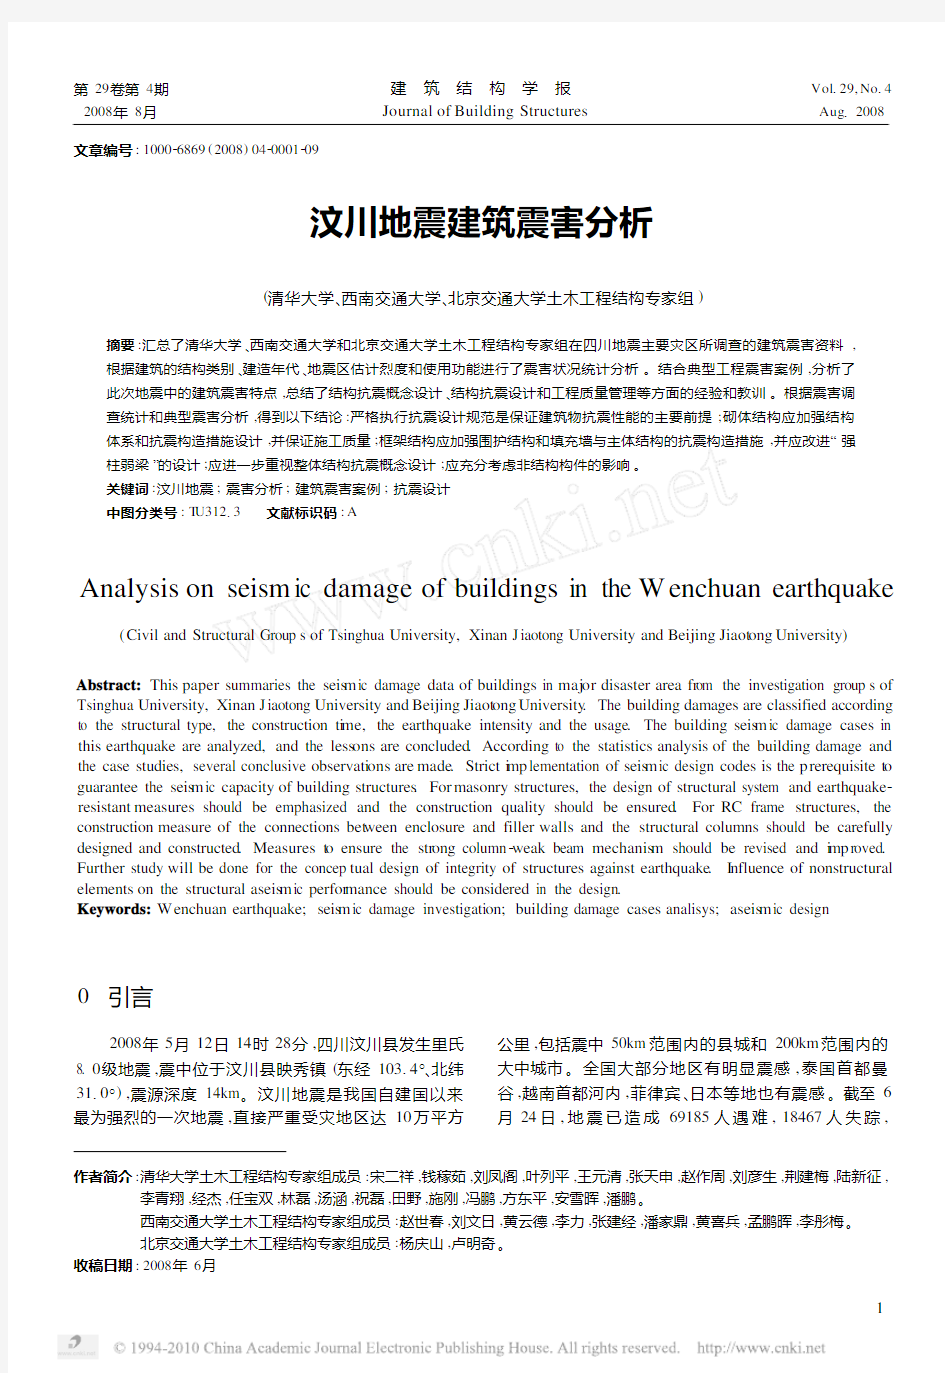 汶川地震建筑震害分析_清华大学土木工程结构专家组